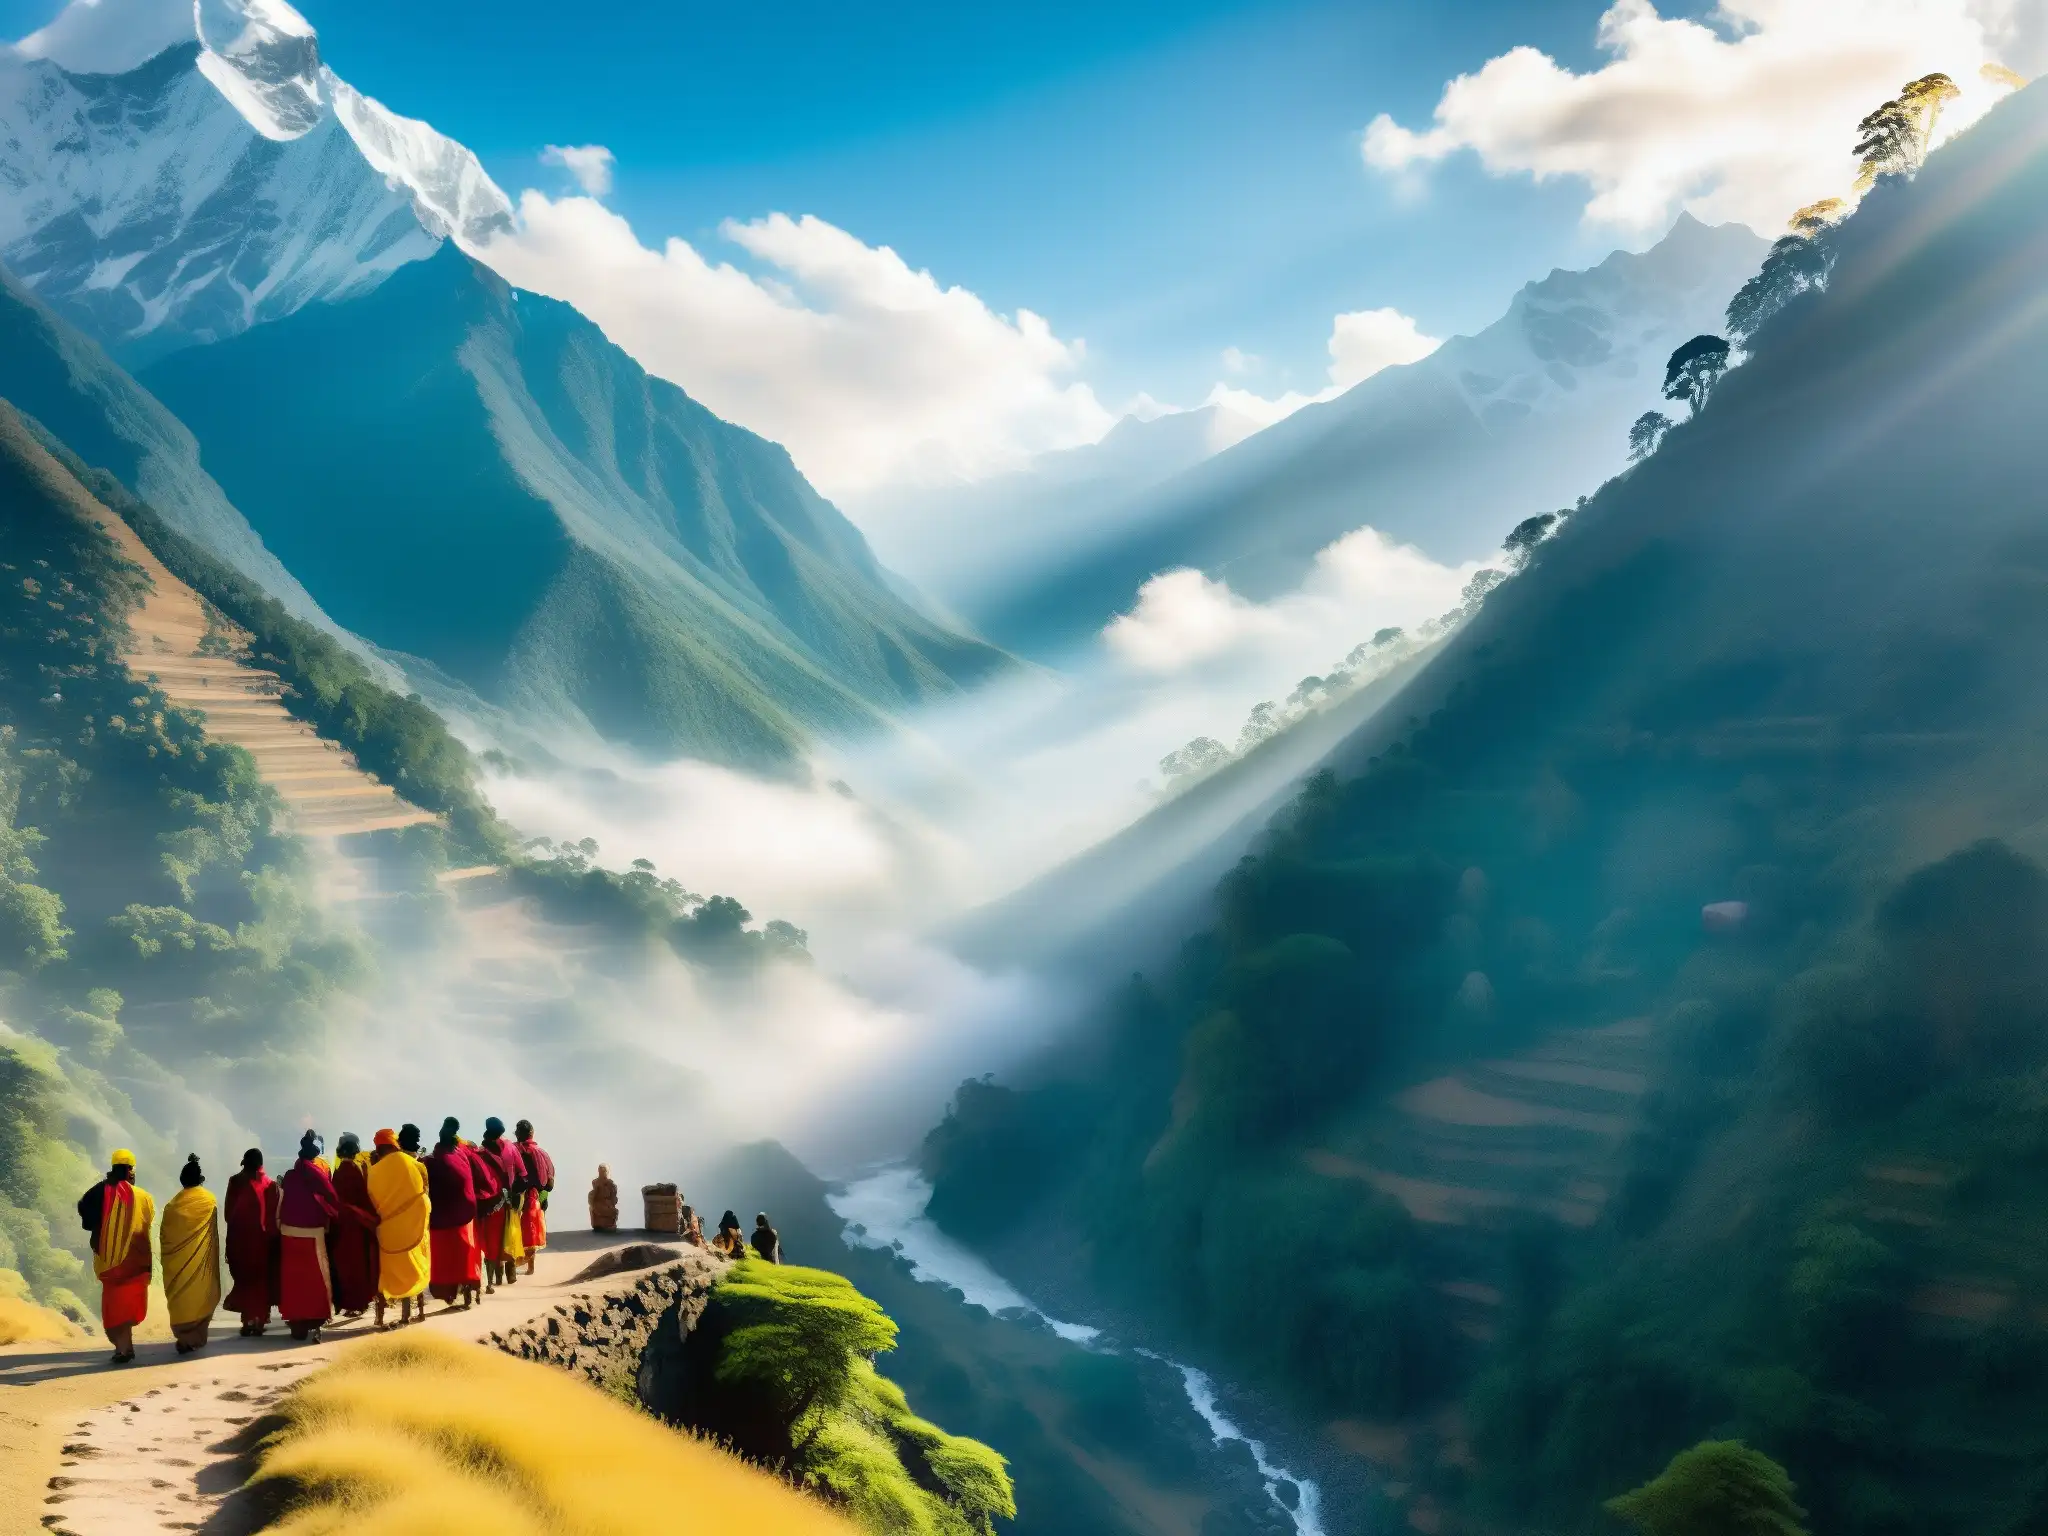 Valle de los Inmortales India mito: Paisaje místico de los majestuosos Himalayas, con templos antiguos y locales en atuendos tradicionales